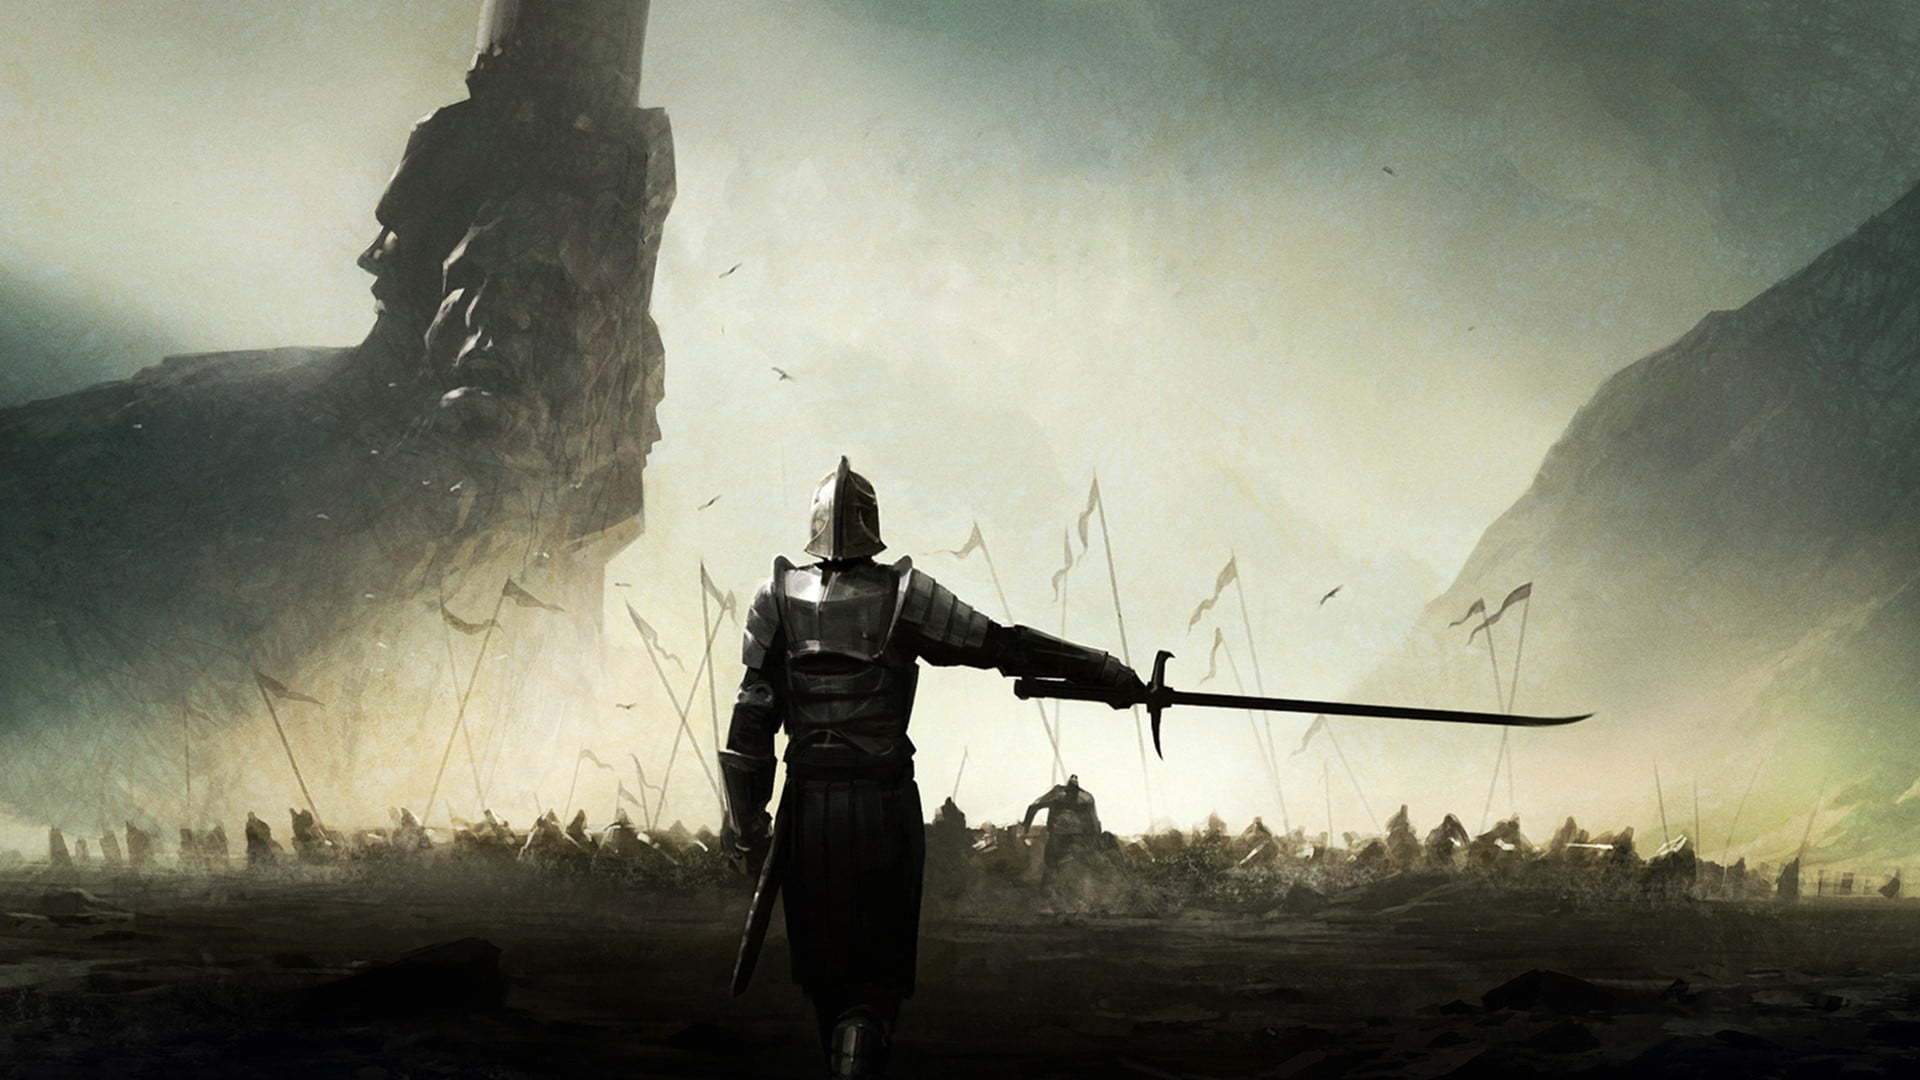 swordsman wallpaper, untitled, knight, warrior, Mortal Online